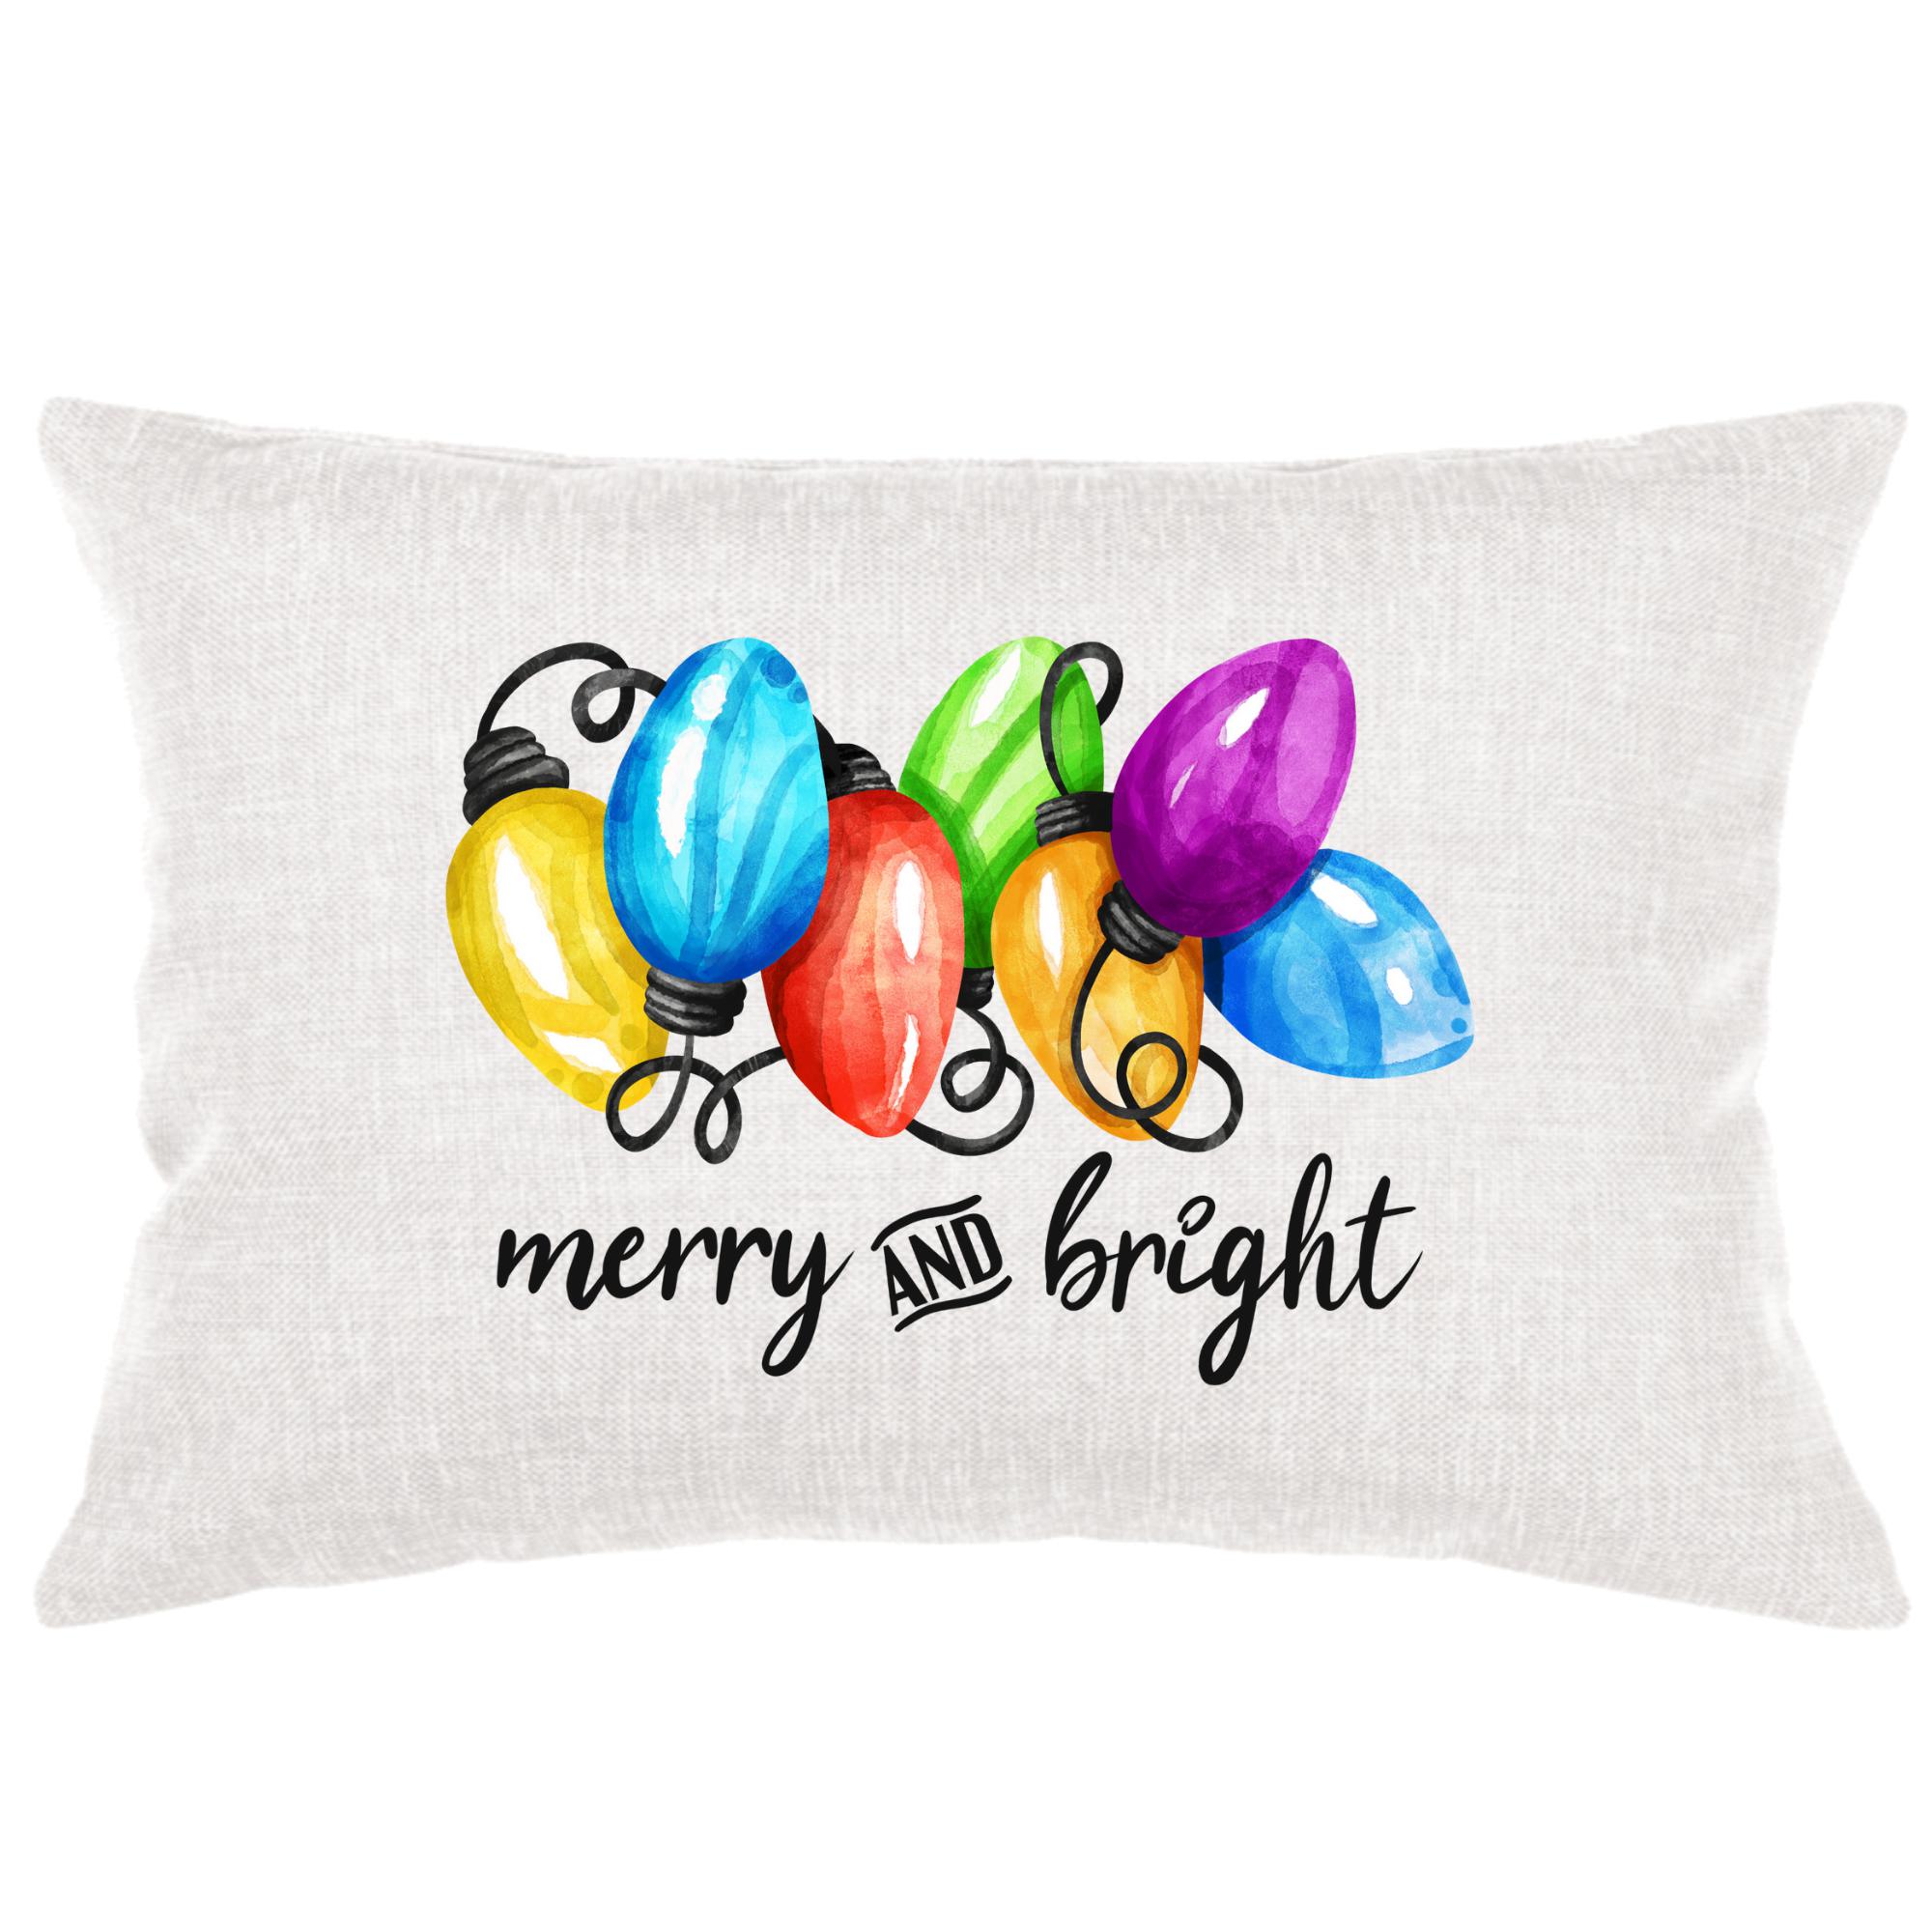 Christmas Lights Lumbar Pillow Throw/Decorative Pillow - Southern Sisters